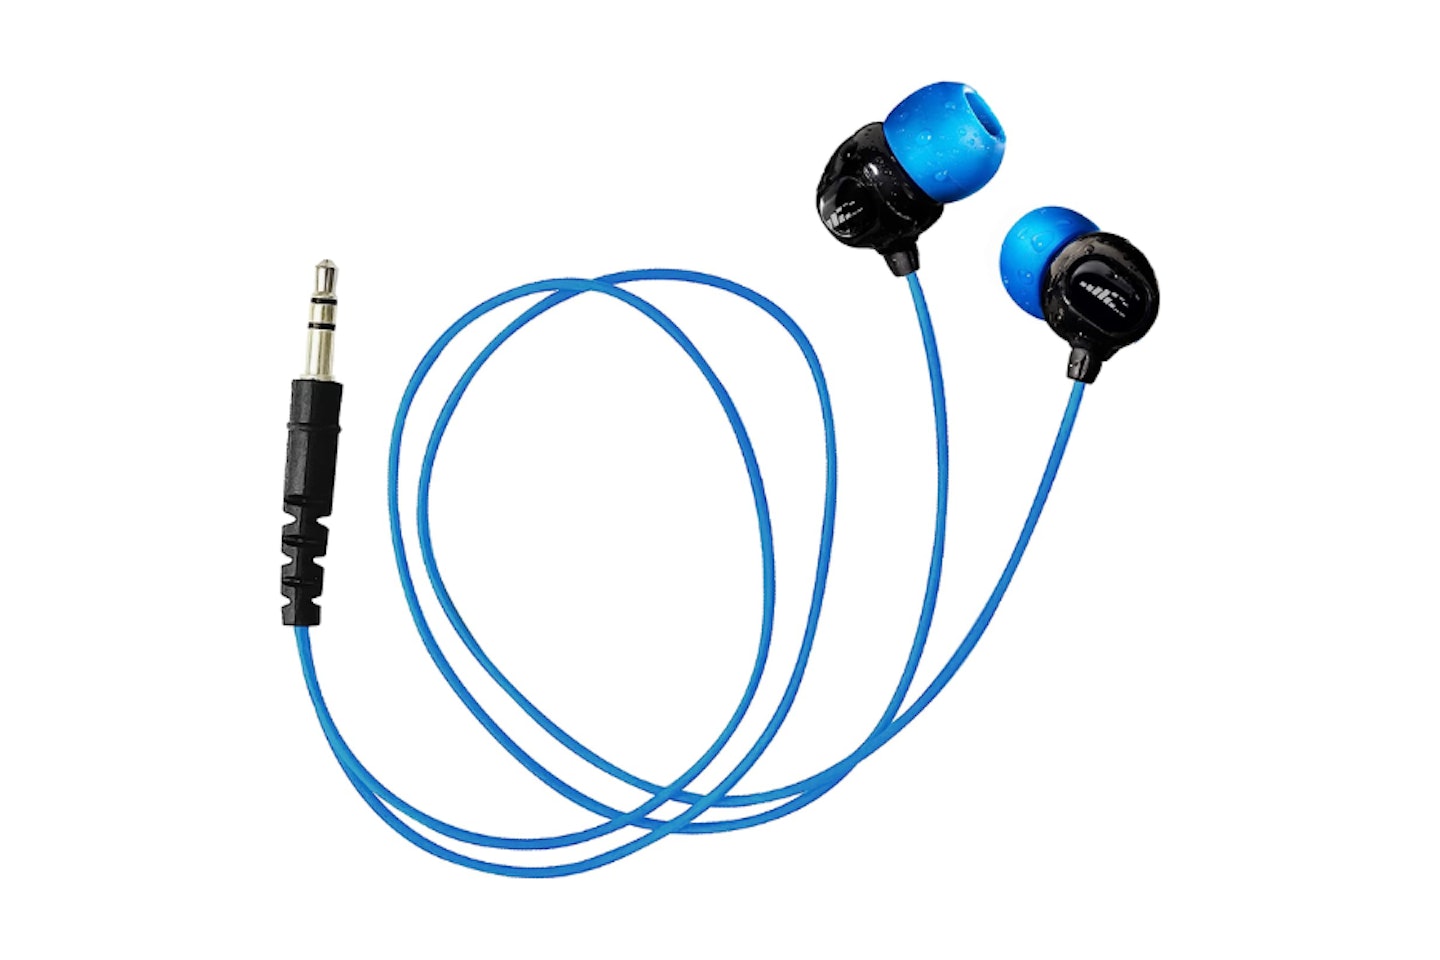 H2O Audio Surge S+ waterproof headphones